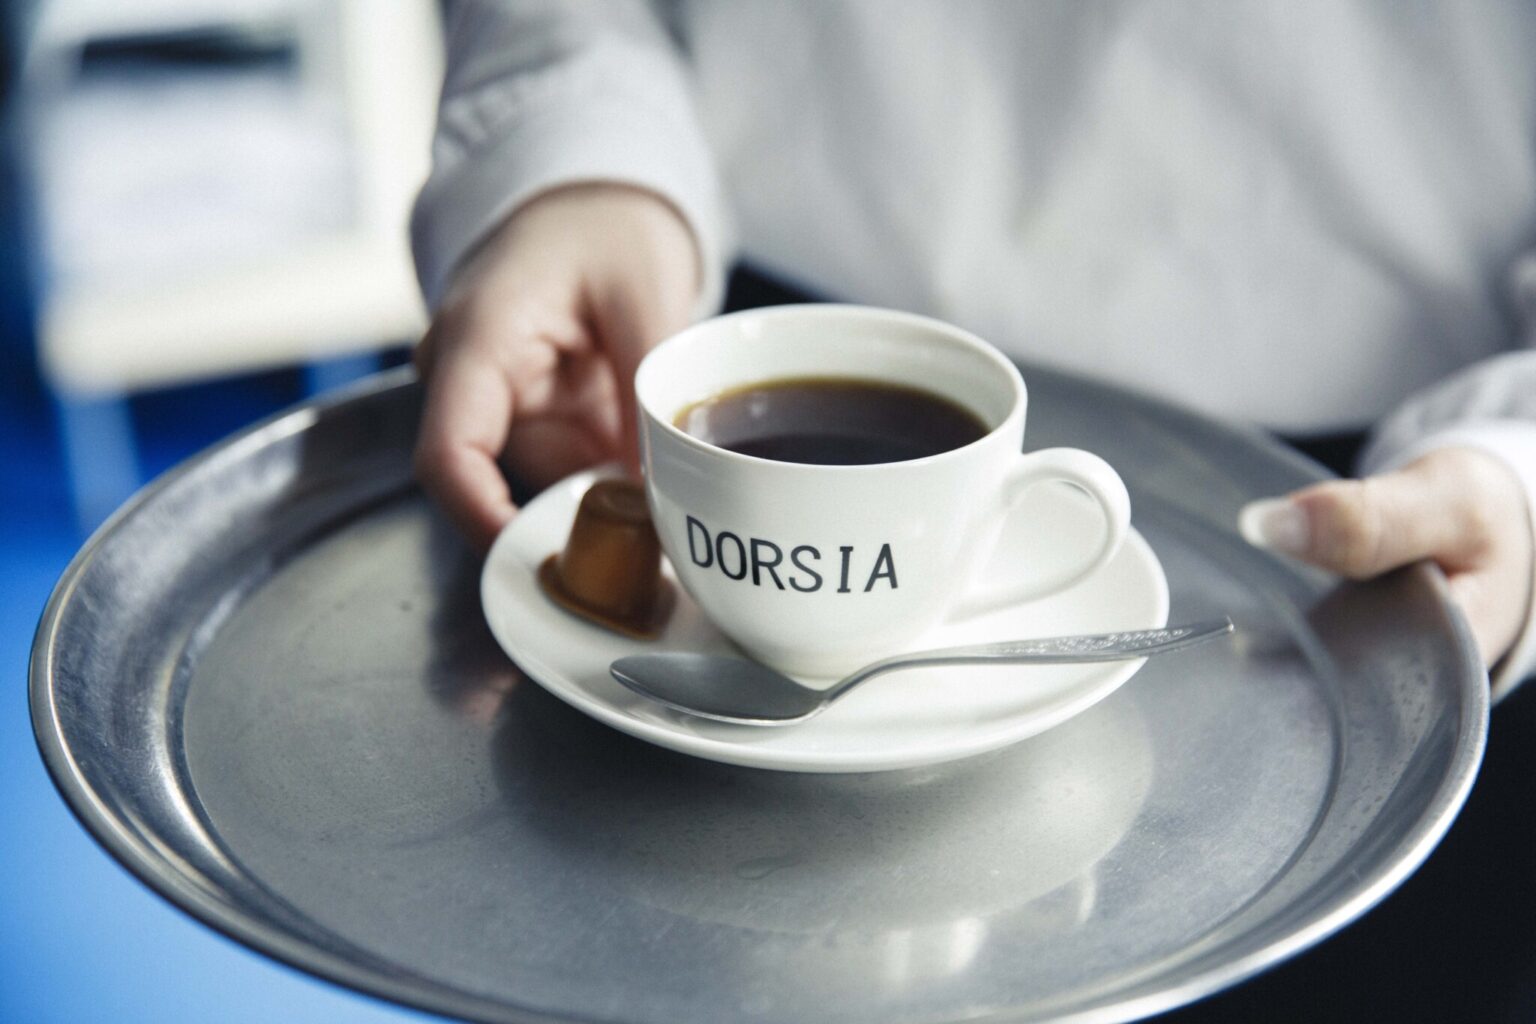 それぞれの形でスピリットを受け継ぐ新顔喫茶へ、ようこそ。〈DORSIA〉など、次世代が新たに発信する店が増えている。“新解釈”の喫茶店が今、最高に居心地がいい。